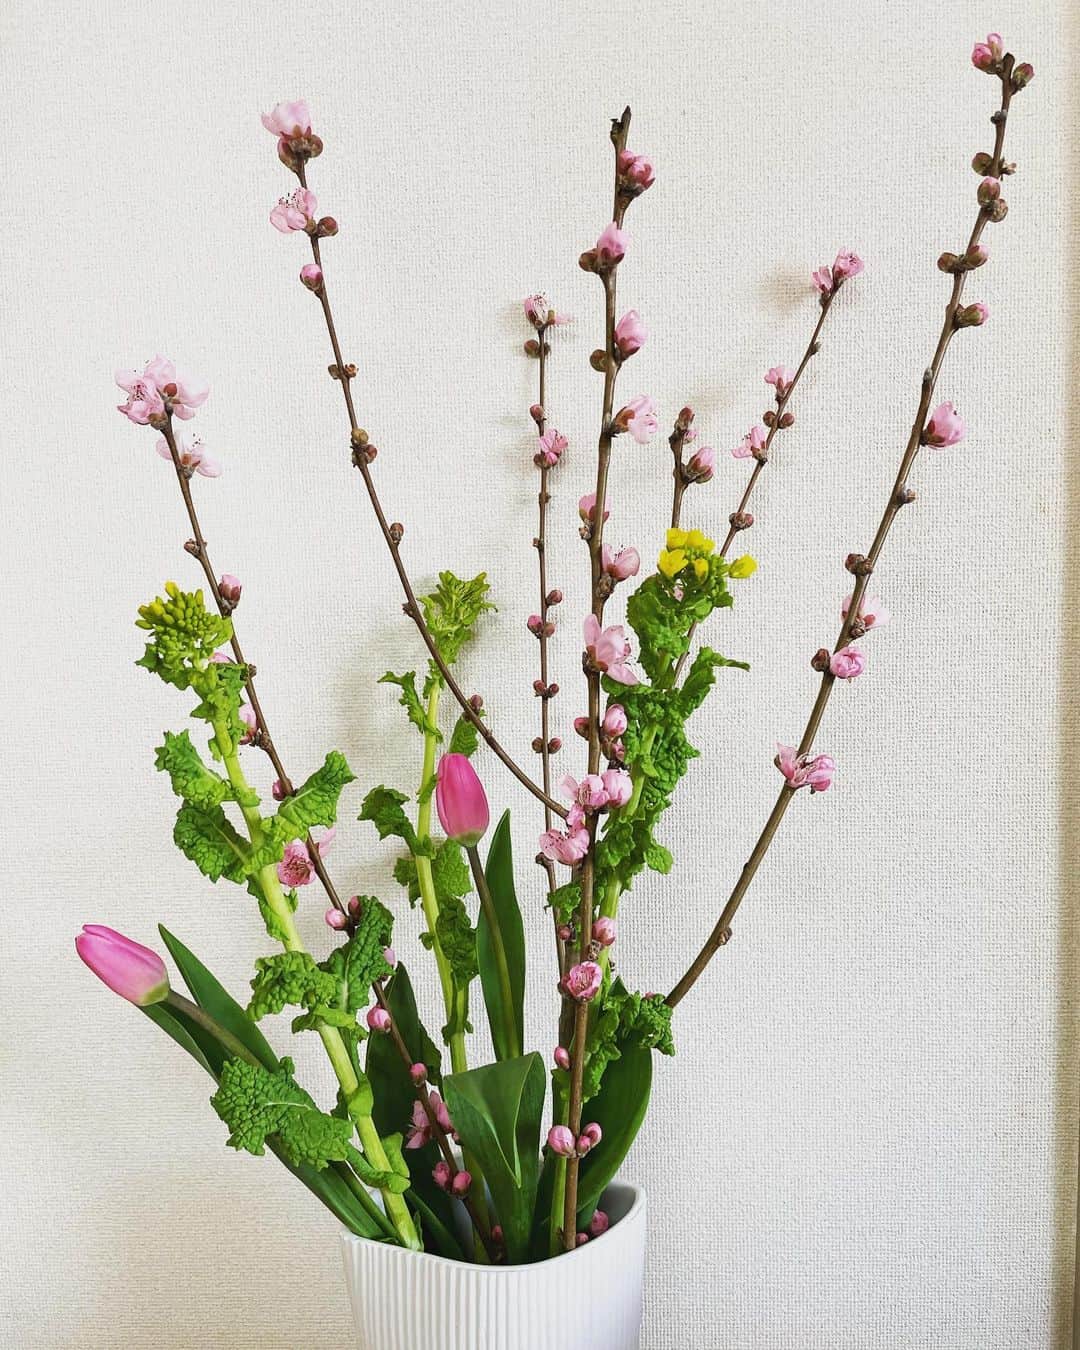 清浦夏実のインスタグラム：「3月なので桃の花を。 #3月 #花 #flowers #花のある暮らし #桃の花 #なのはな #チューリップ #かわいい #桃の節句 #ひな祭り#🎎 #日比谷花壇 #綺麗に #生けたい #どうすれば  桜と悩みましたが、よく咲いている大ぶりな枝があったので桃をチョイス。もうすぐひな祭りですね。私は四人姉妹なのでひな祭りは毎年盛大にやっていました。大好きな行事の一つです。チューリップと菜の花で卒業式っぽさもあるアレンジ。」